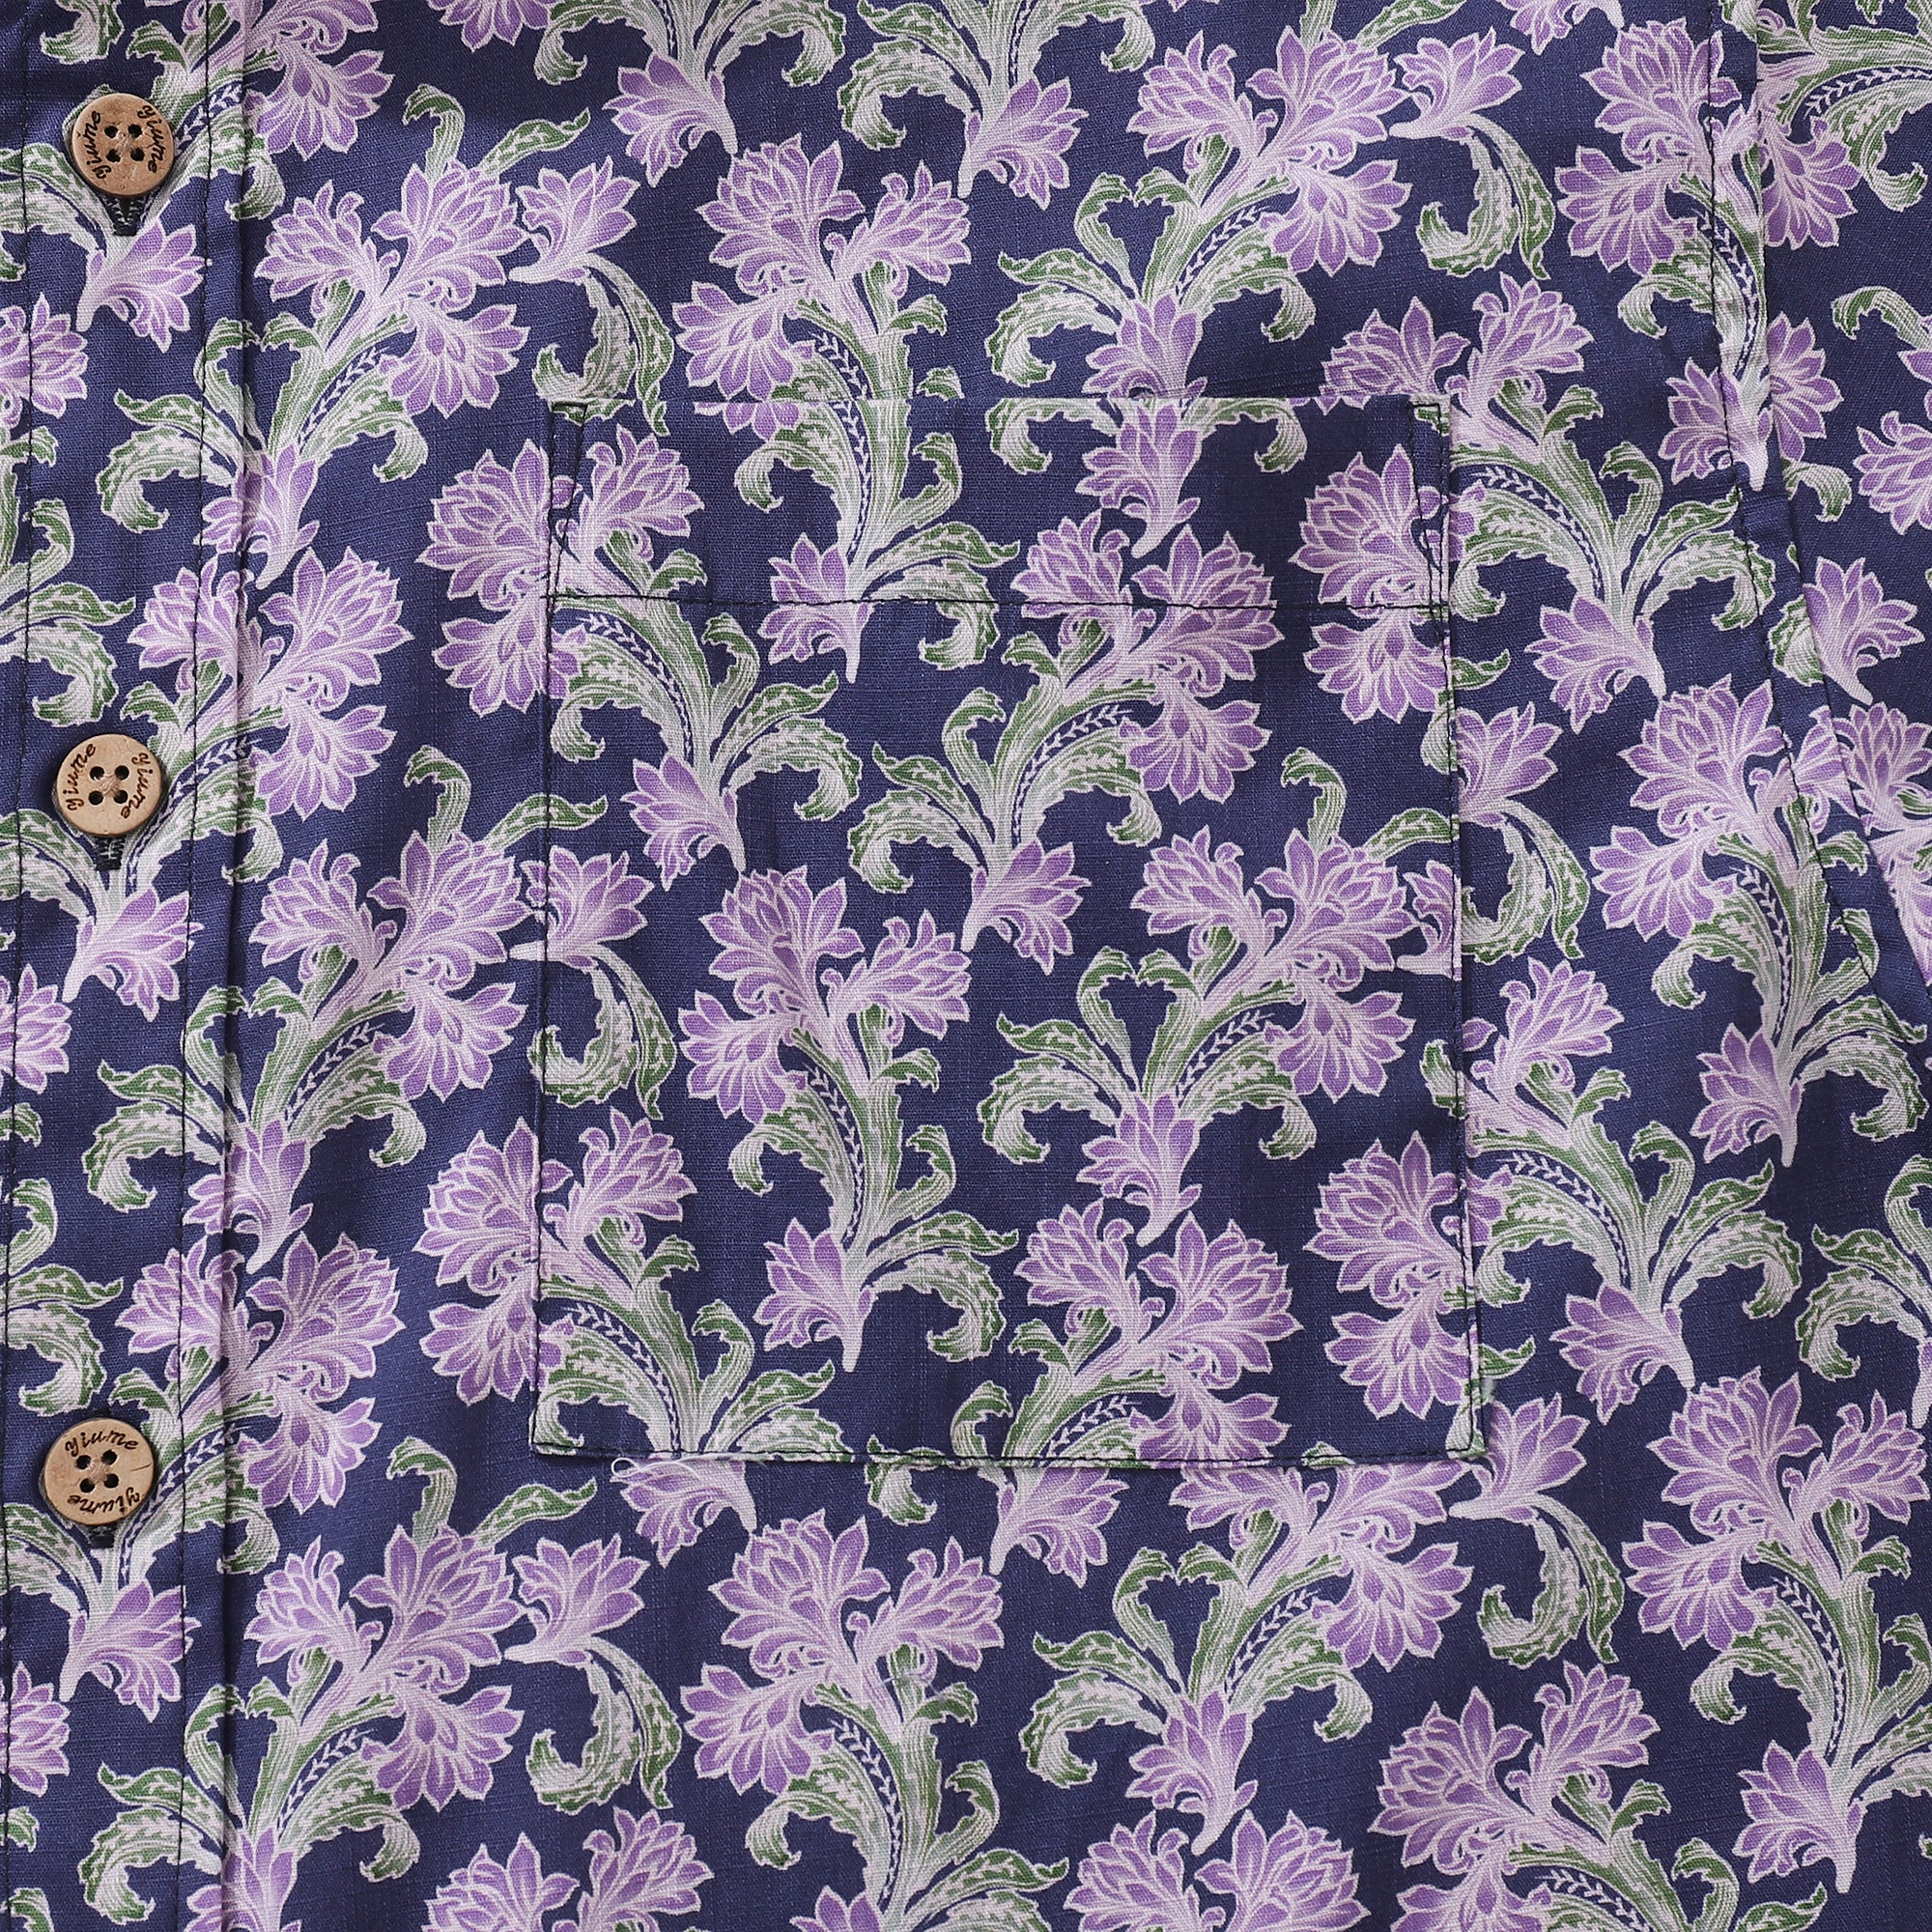 Camicia abbottonata da uomo Camicia Aloha in cotone floreale viola Camicia hawaiana